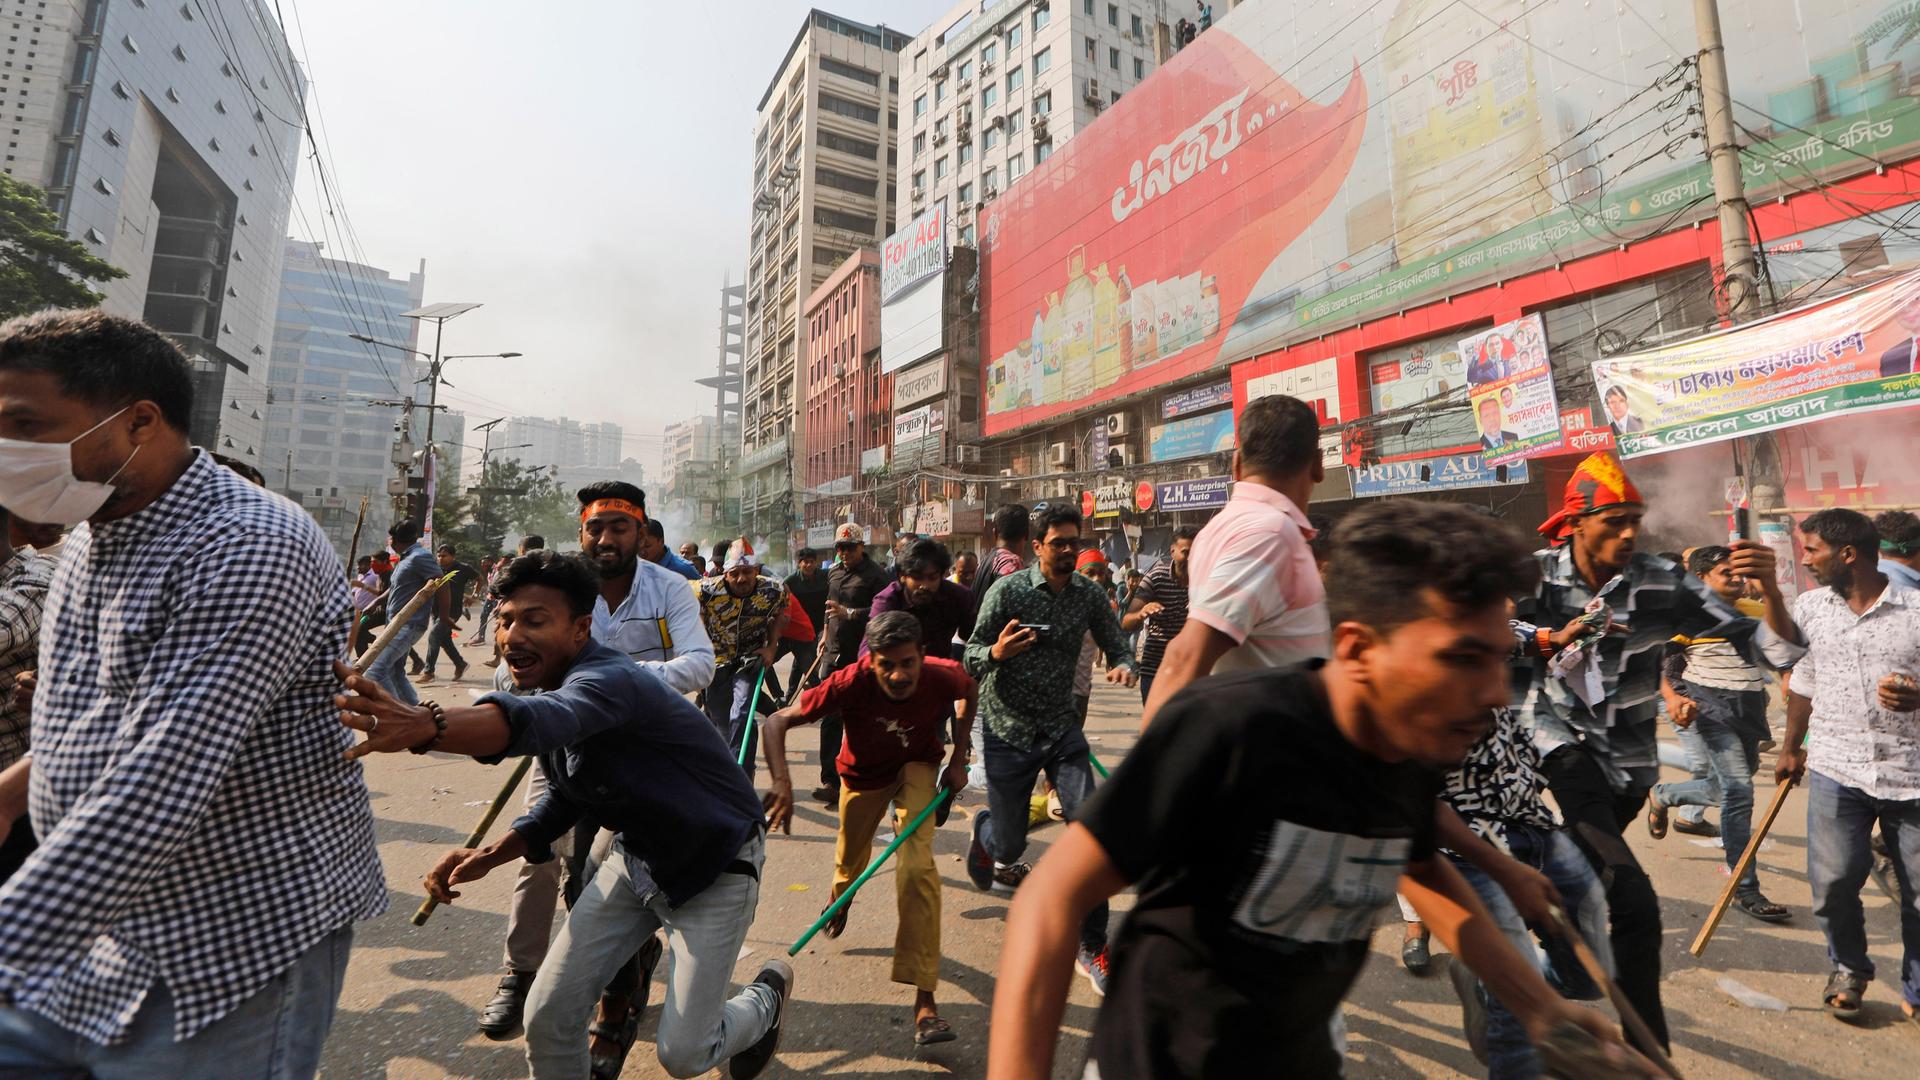 Menschen rennen auf einer Straße in Panik auseinander. Im Hintergrund ist Rauch zu sehen.